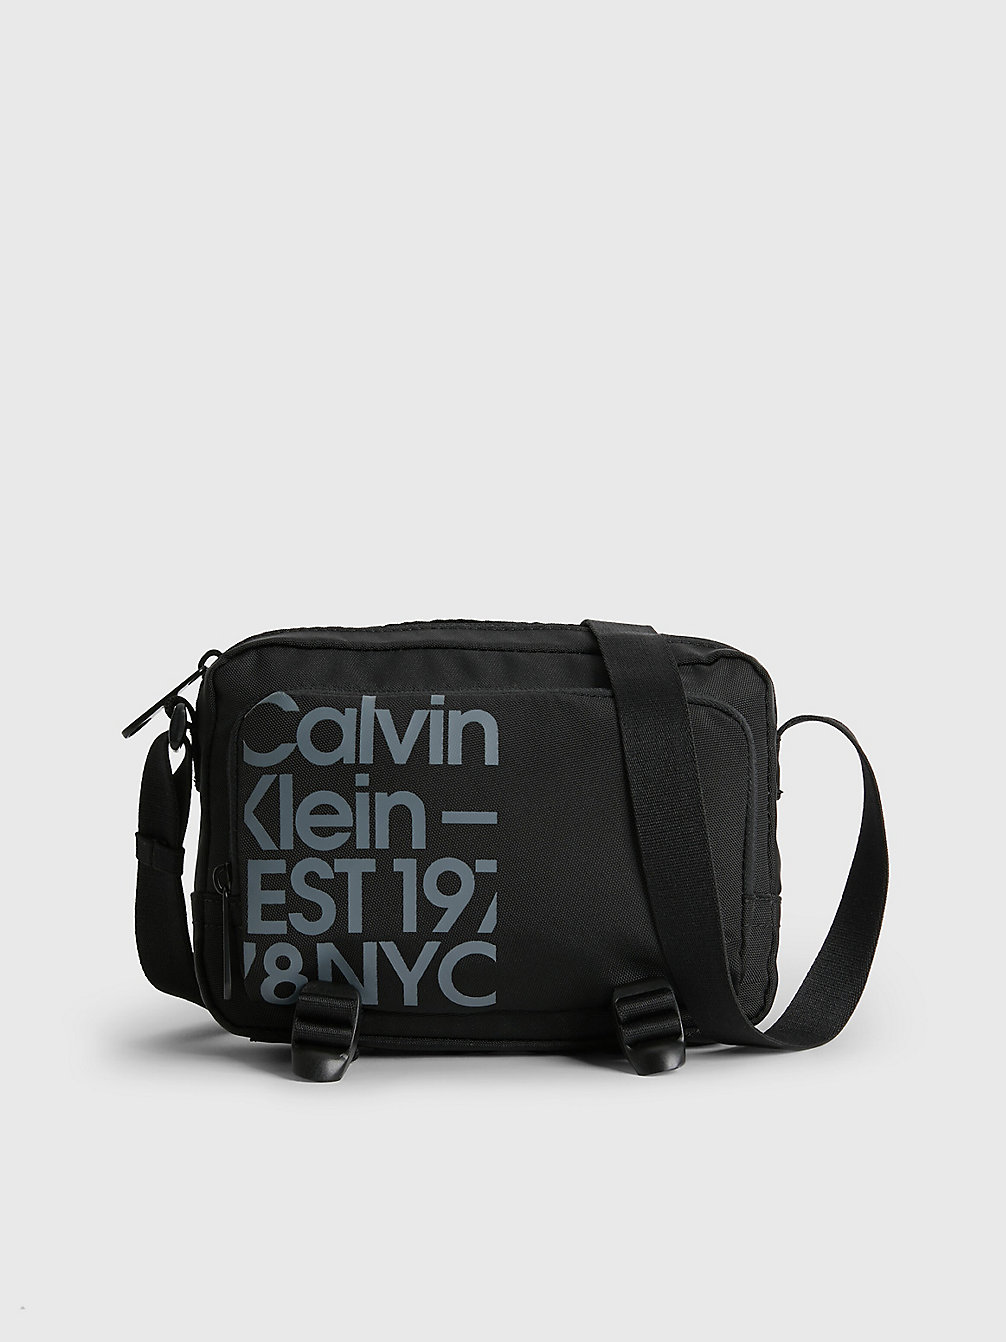 BLACK / OVERCAST GREY PRINT Sac En Bandoulière Recyclé undefined hommes Calvin Klein